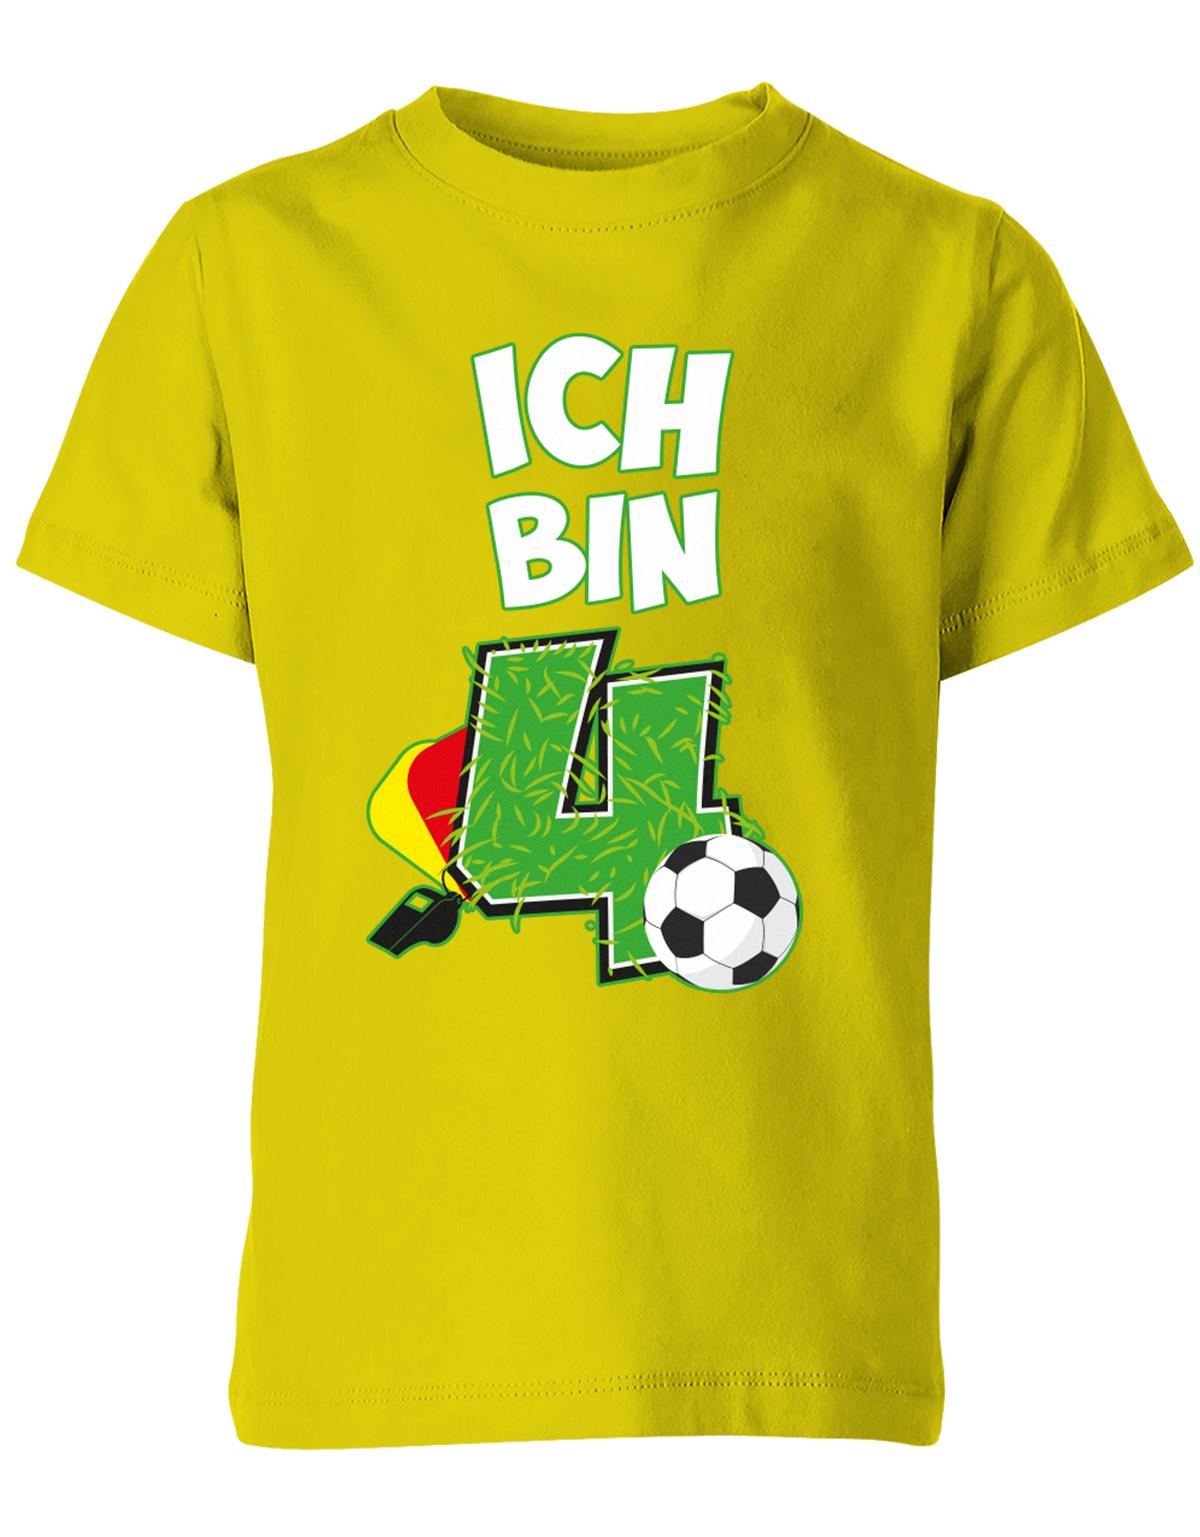 ich-bin-4-fussball-rote-gelbe-karte-geburtstag-fussballer-shirt-kinder-shirt-gelb